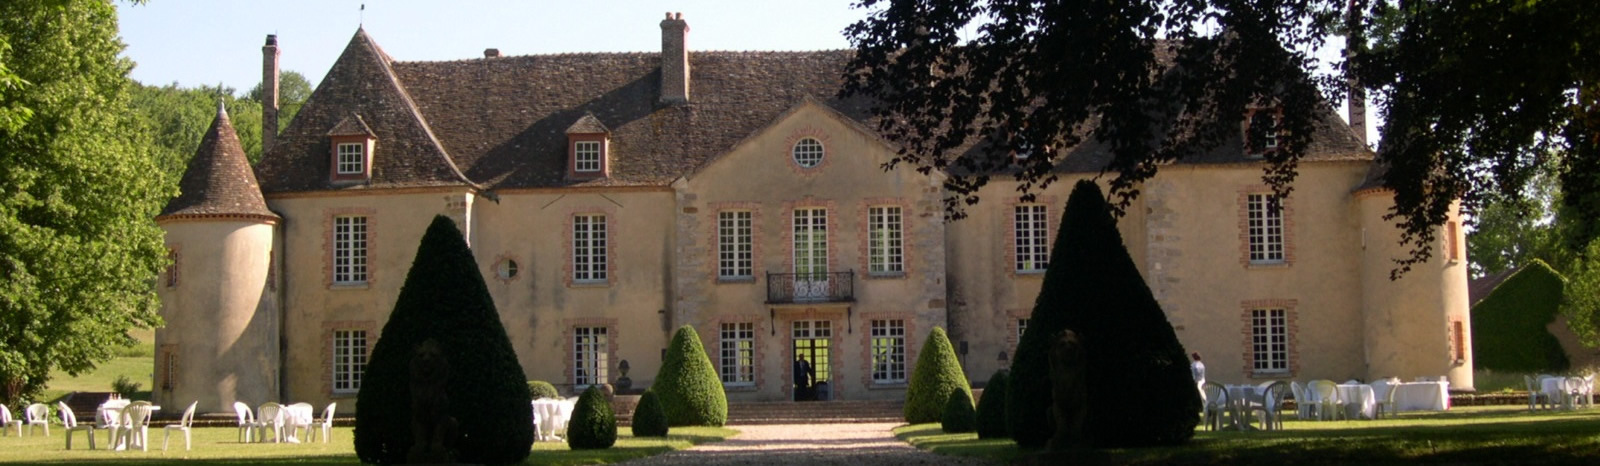 Château-Nailly-côté-parc